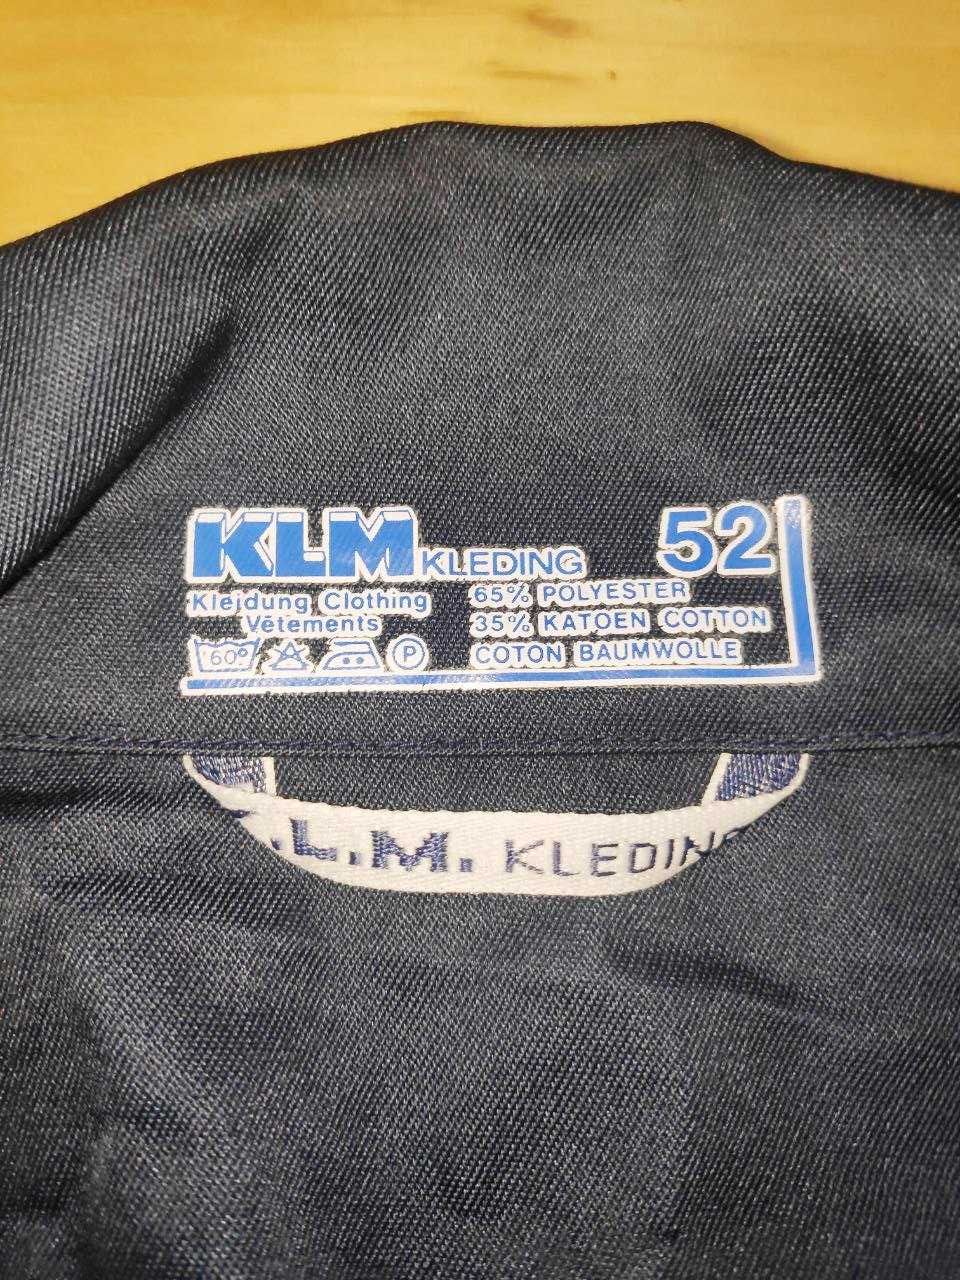 NEW 52 розмір НІДЕРЛАНДИ KLM kleding комбінезон